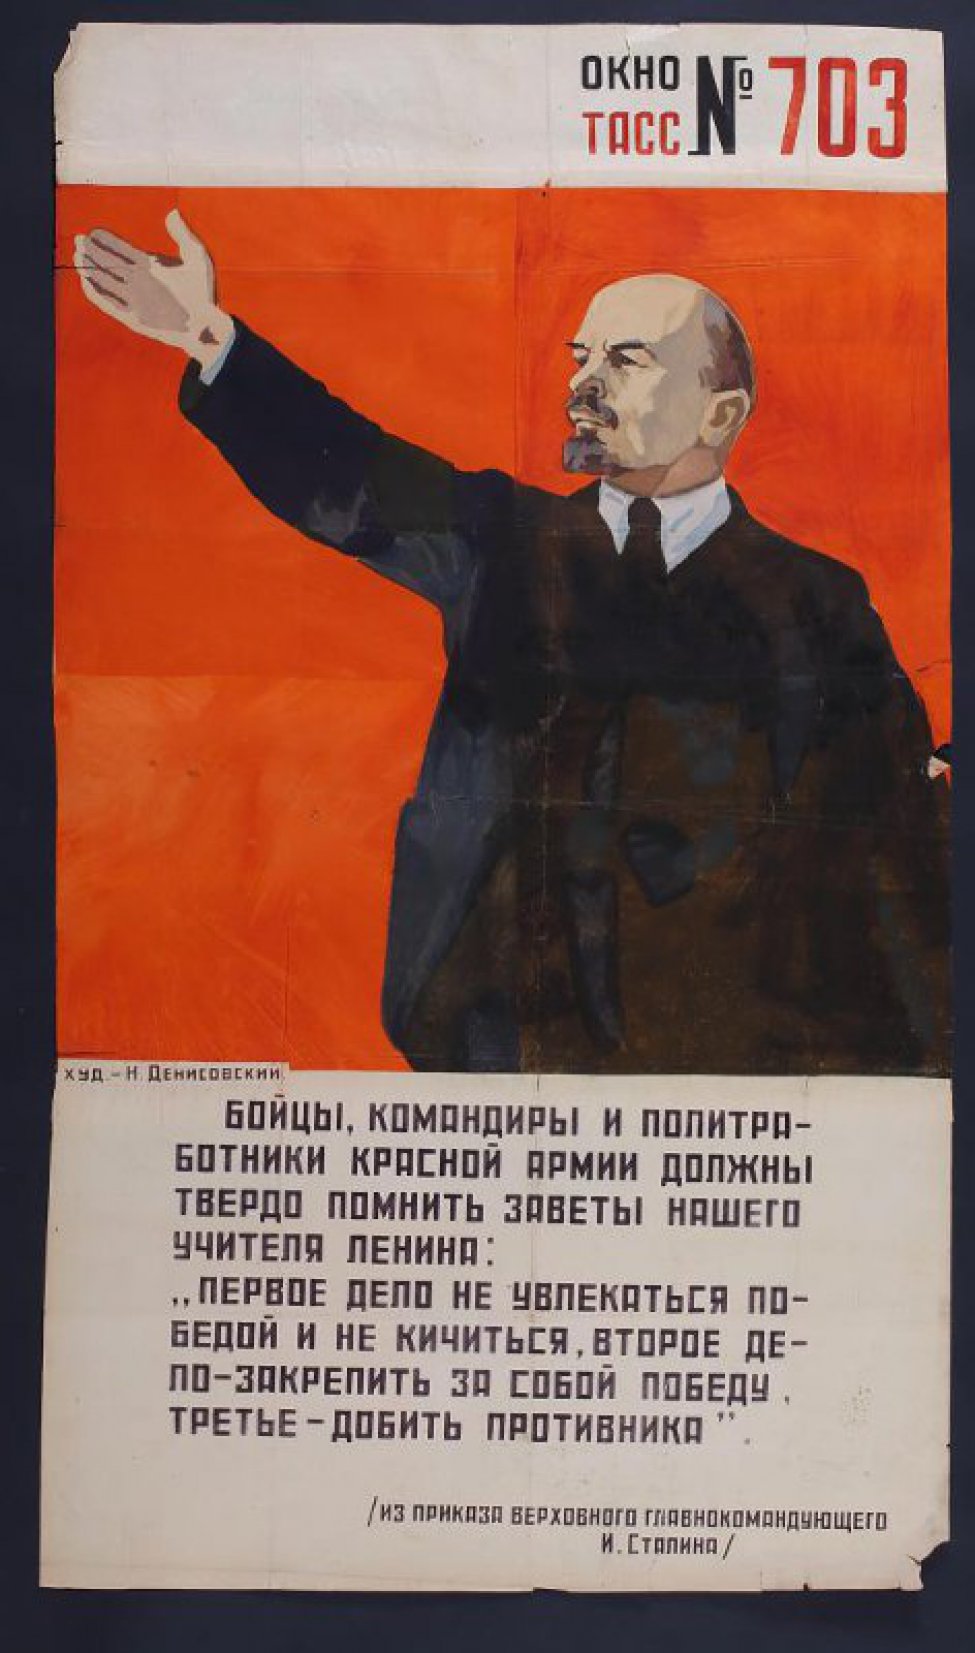 Изображено: на красном фоне В.И.Ленин с поднятой левой рукой, текст: " Бойцы, командиры,политработники Красной Армии..."